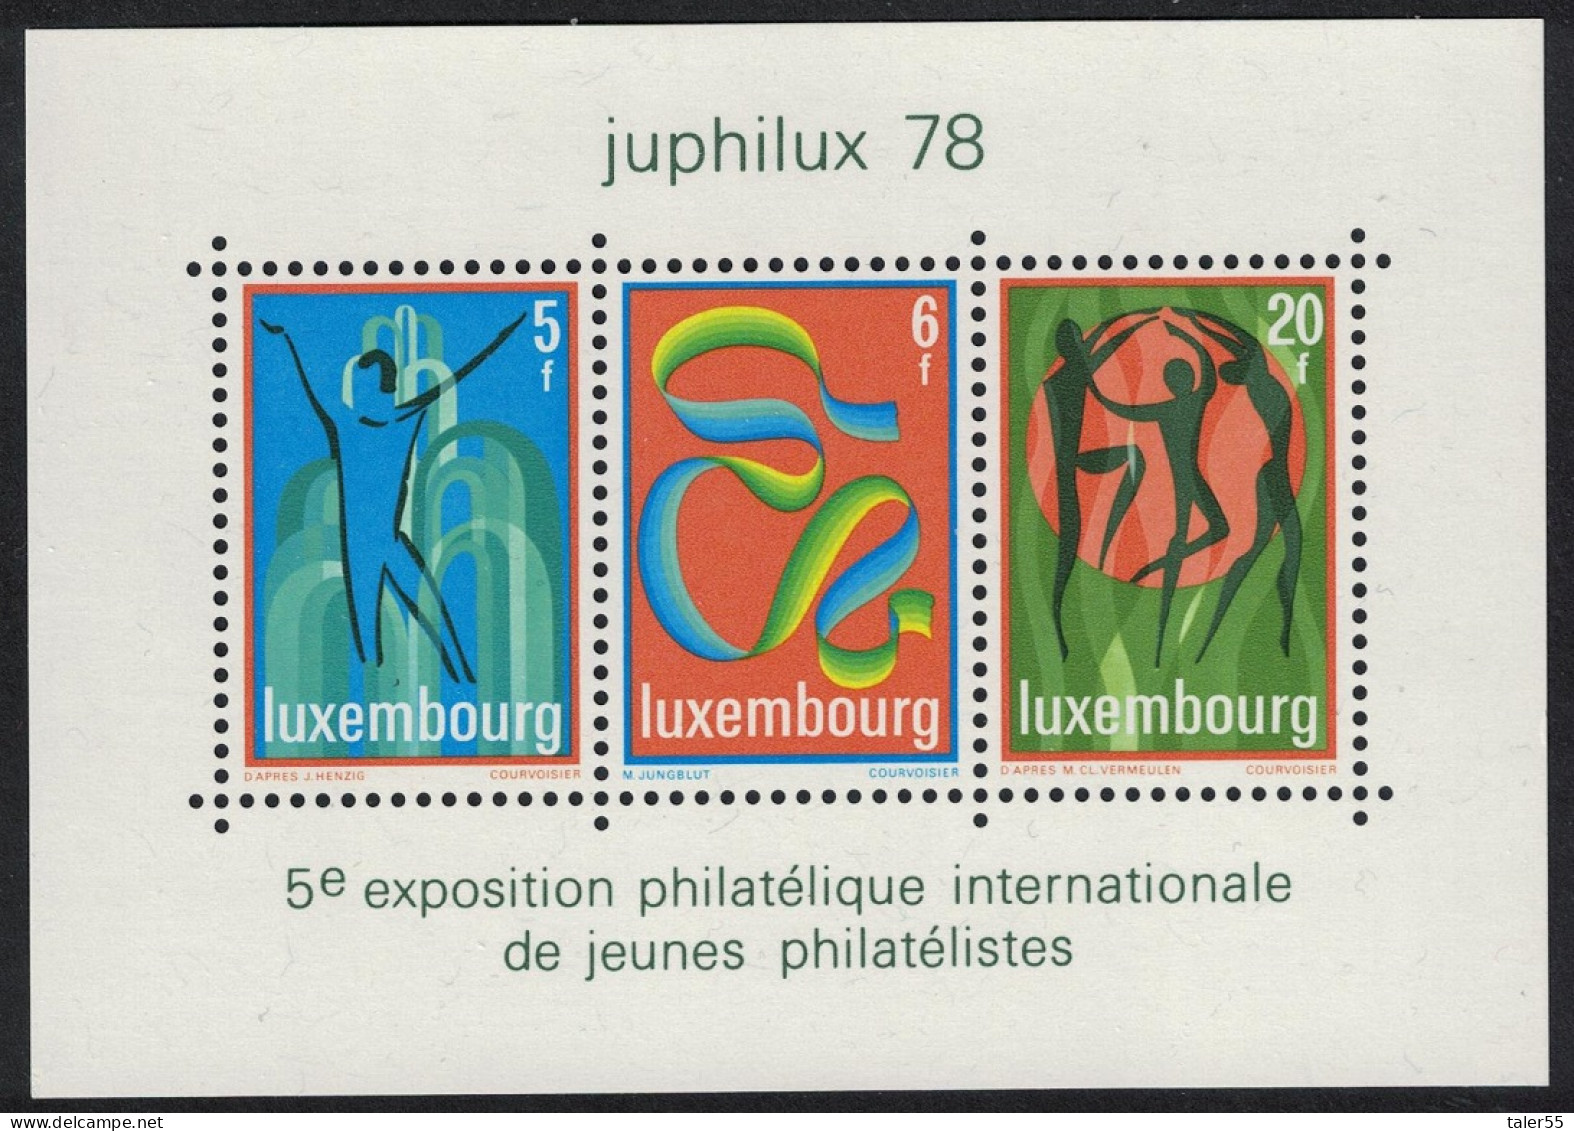 Luxembourg Juphilux 78 Junior International Philatelic Exhibition MS 1978 MNH SG#MS1003 - Ungebraucht